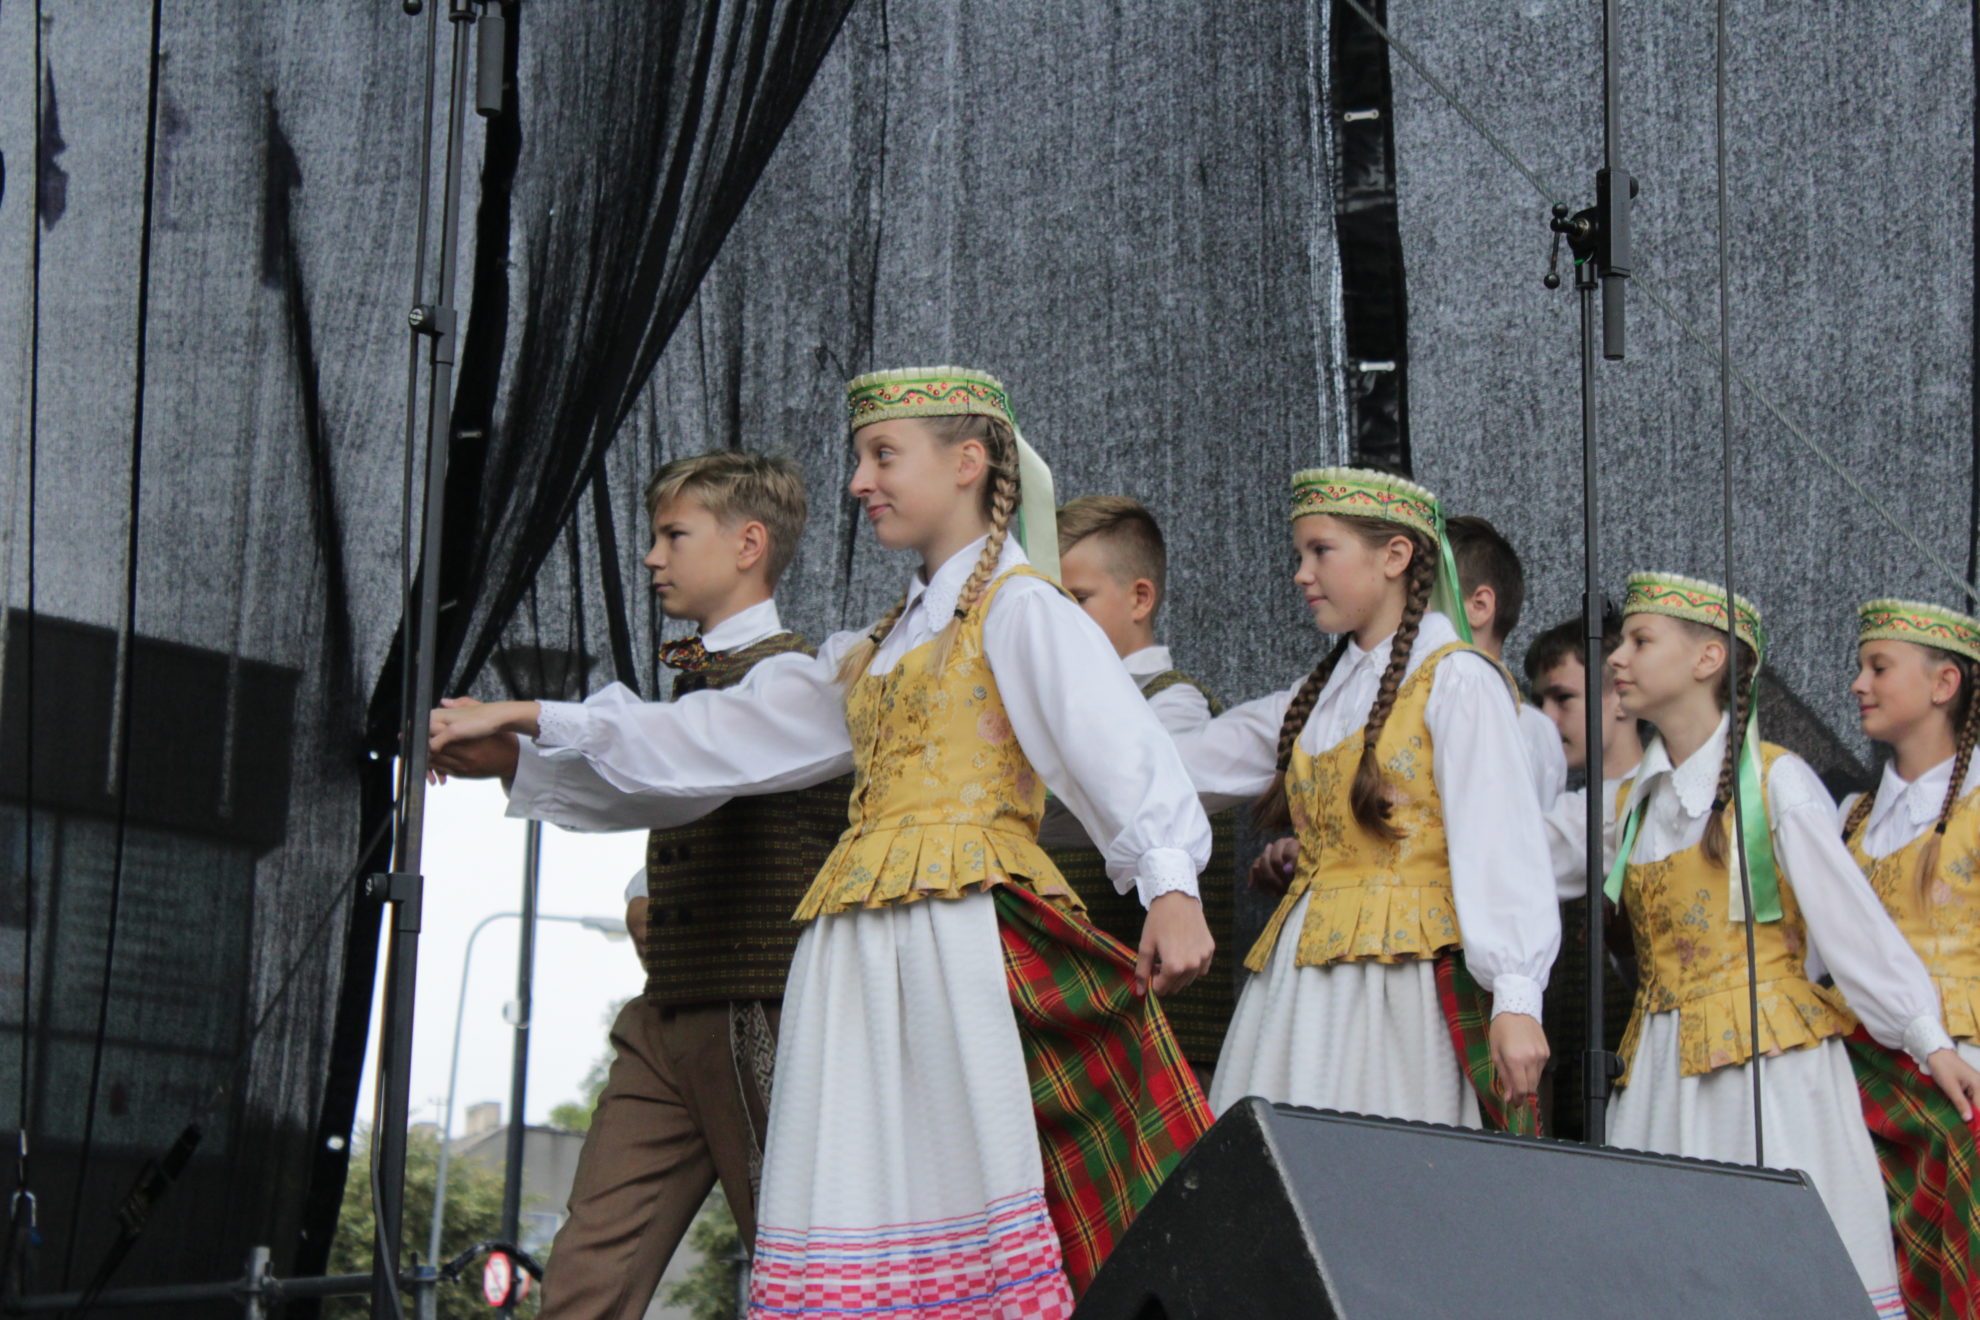 Penktadienį įvairiuose šalies miestuose rengiama akcija „Visa Lietuva šoka“.